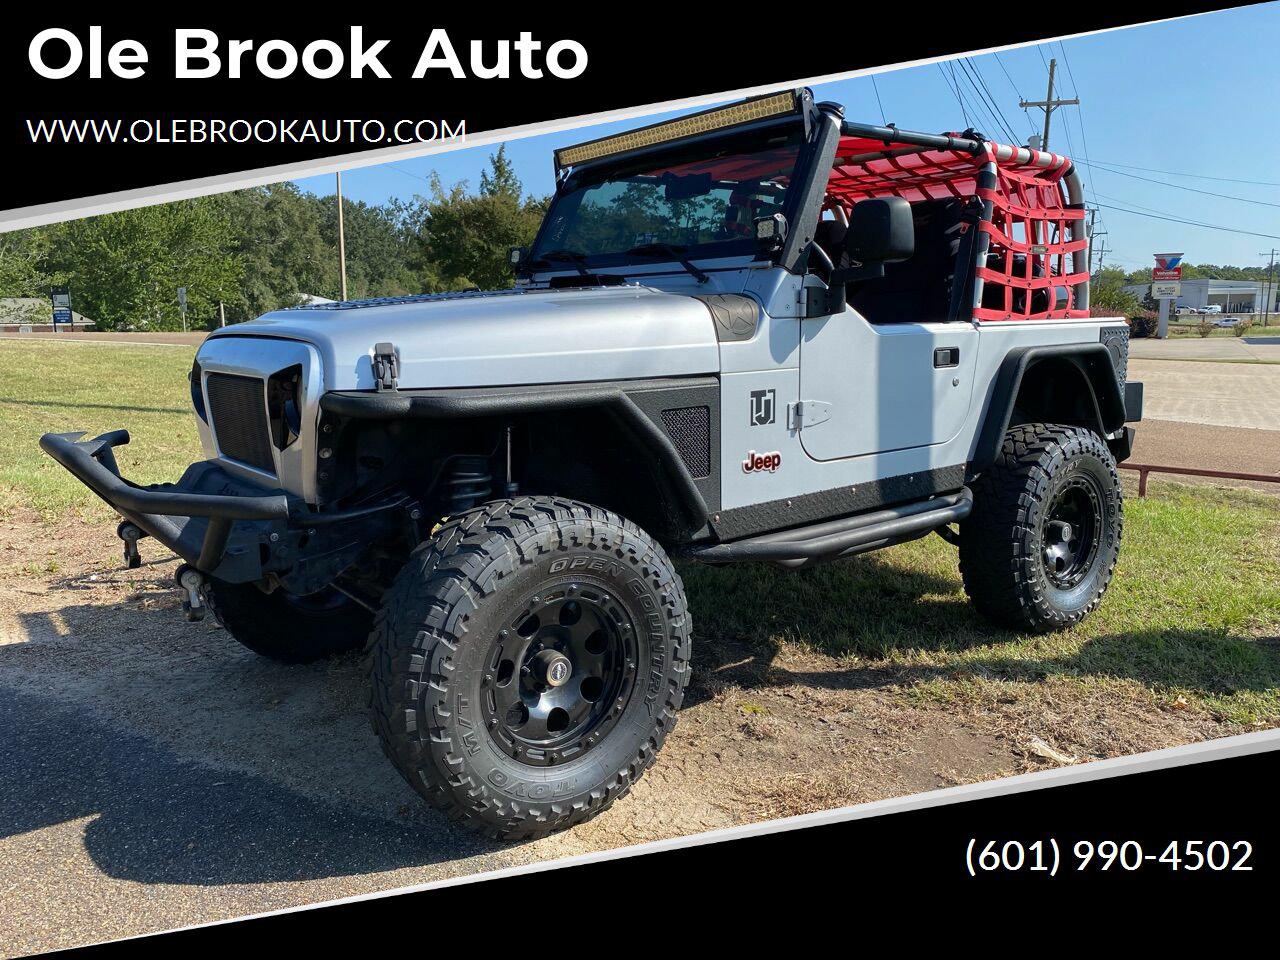 Ole Brook Jeep